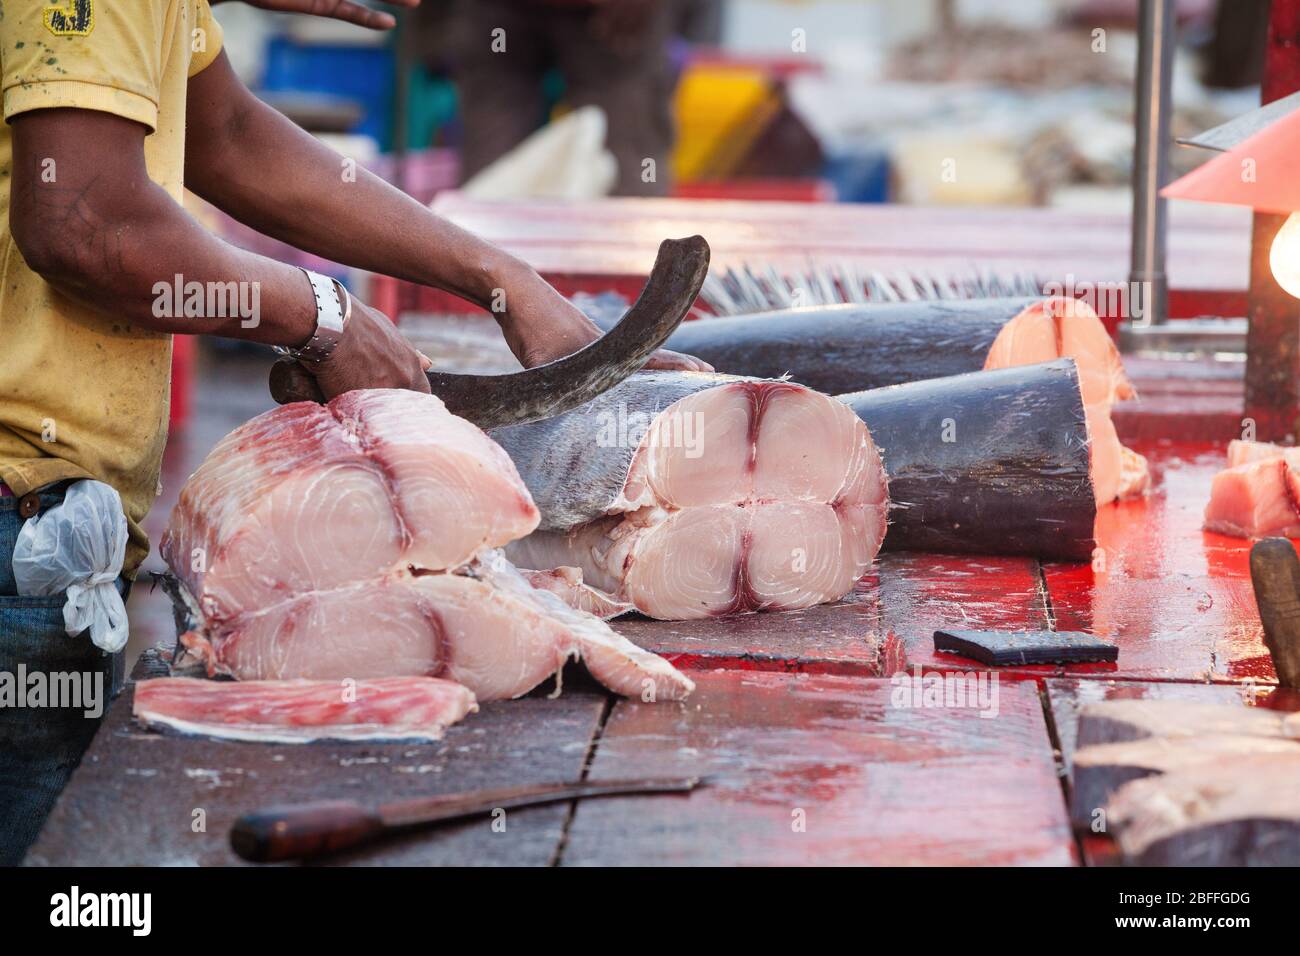 Hände mit Messer hacken Fische im Freien. Ein Fischer und Fischverkäufer verfolgt einen großen Fisch auf einem Holztisch in Scheiben geschnitten. Blut auf dem Holztisch vergossen. Stockfoto